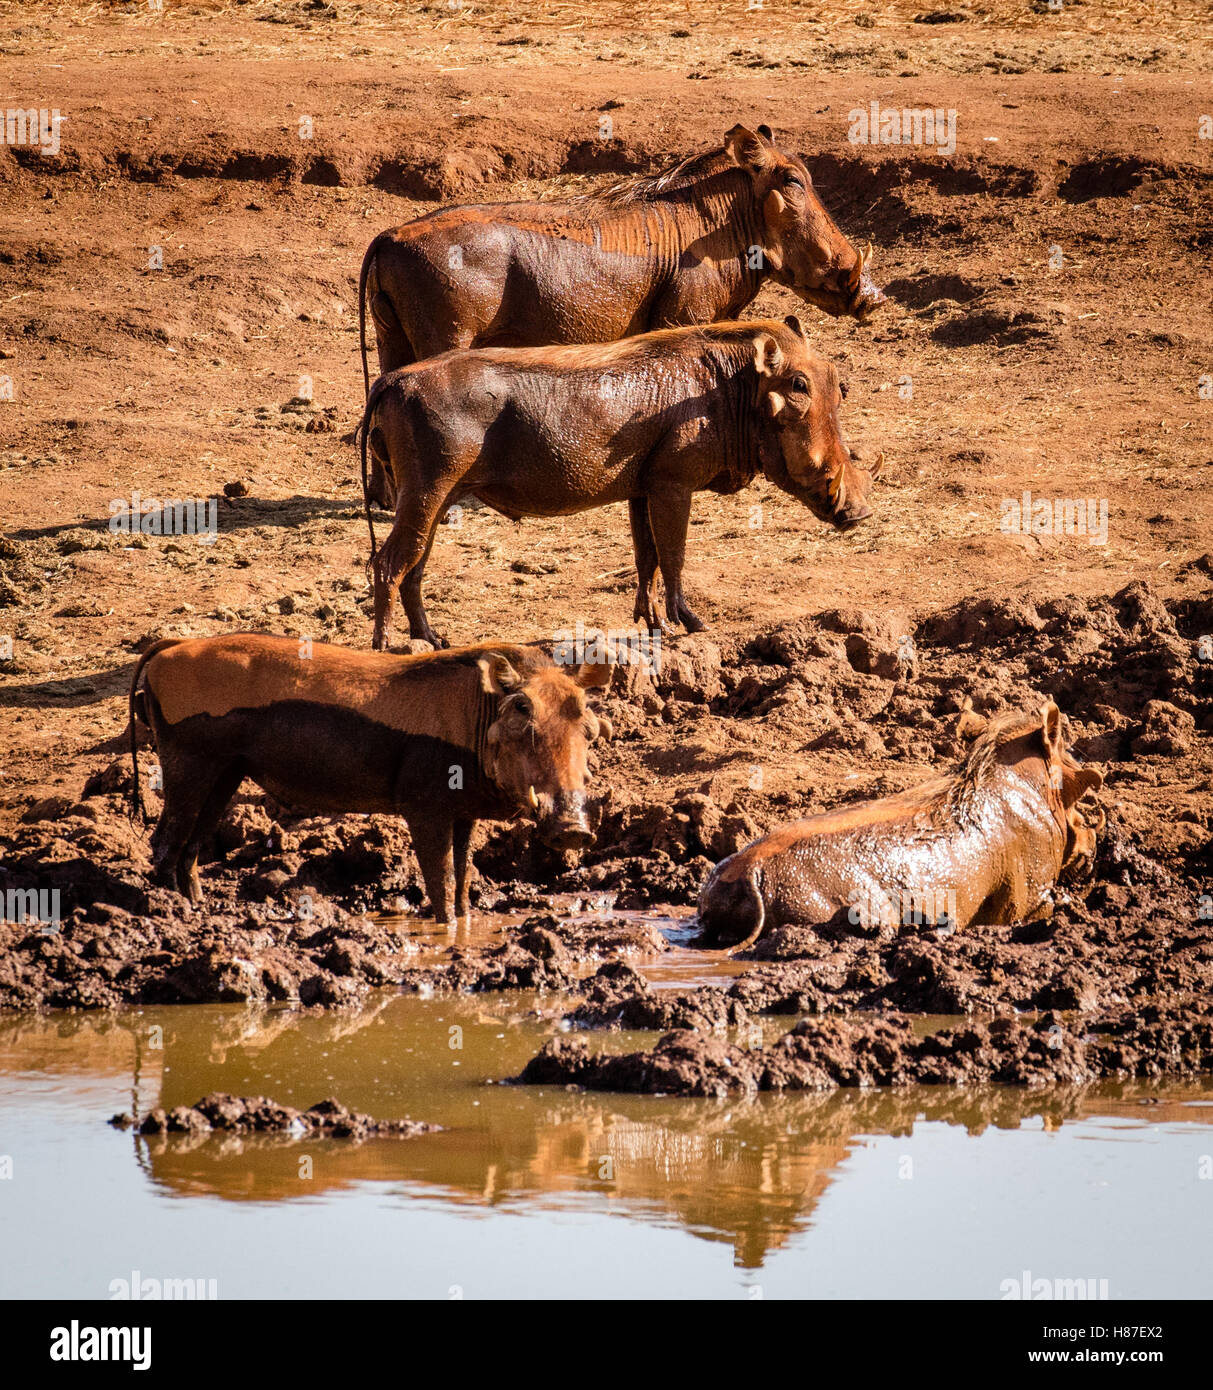 Quatre phacochère un se vautrer dans la boue à un étang dans le parc national de Tsavo au Kenya Afrique Banque D'Images